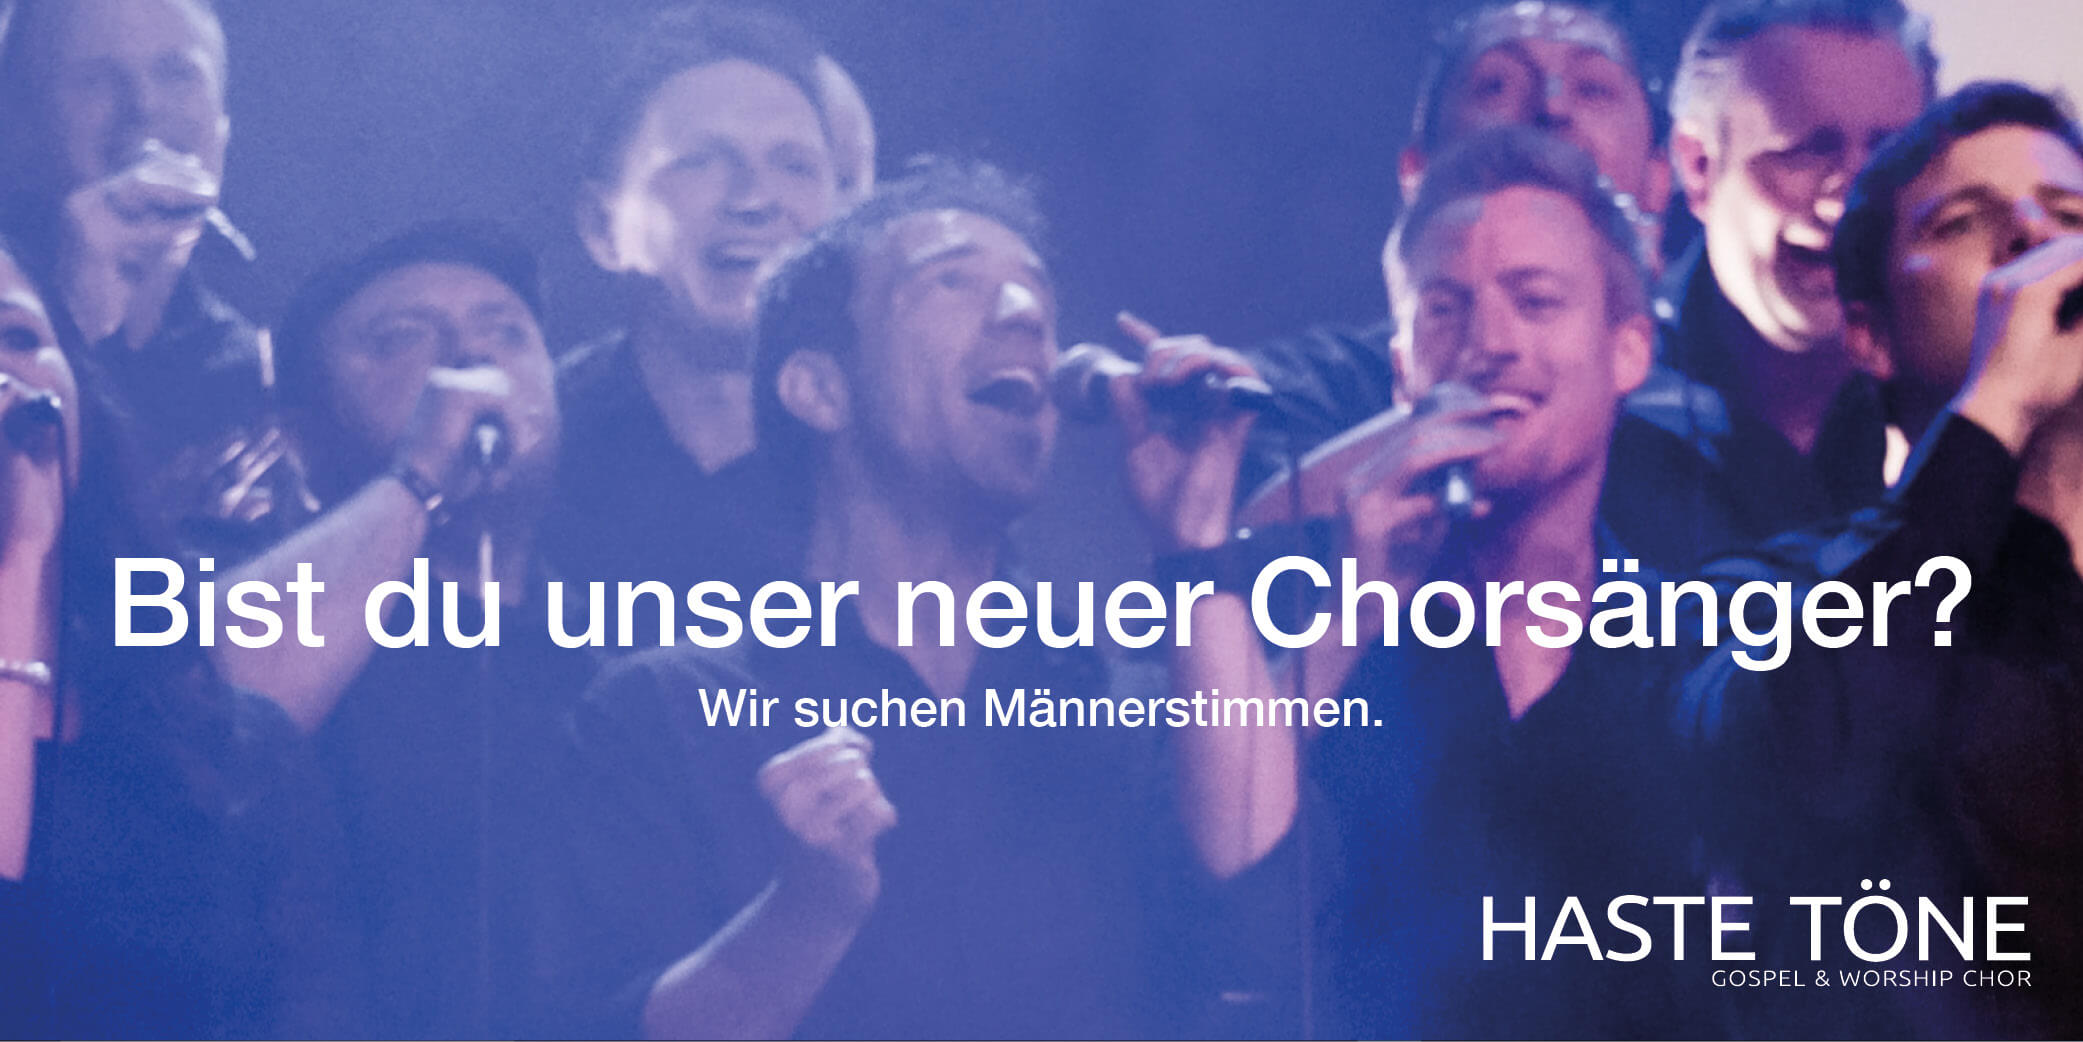 Die Haste Töne Band - Haste Töne sucht singende Männer - Chorsänger